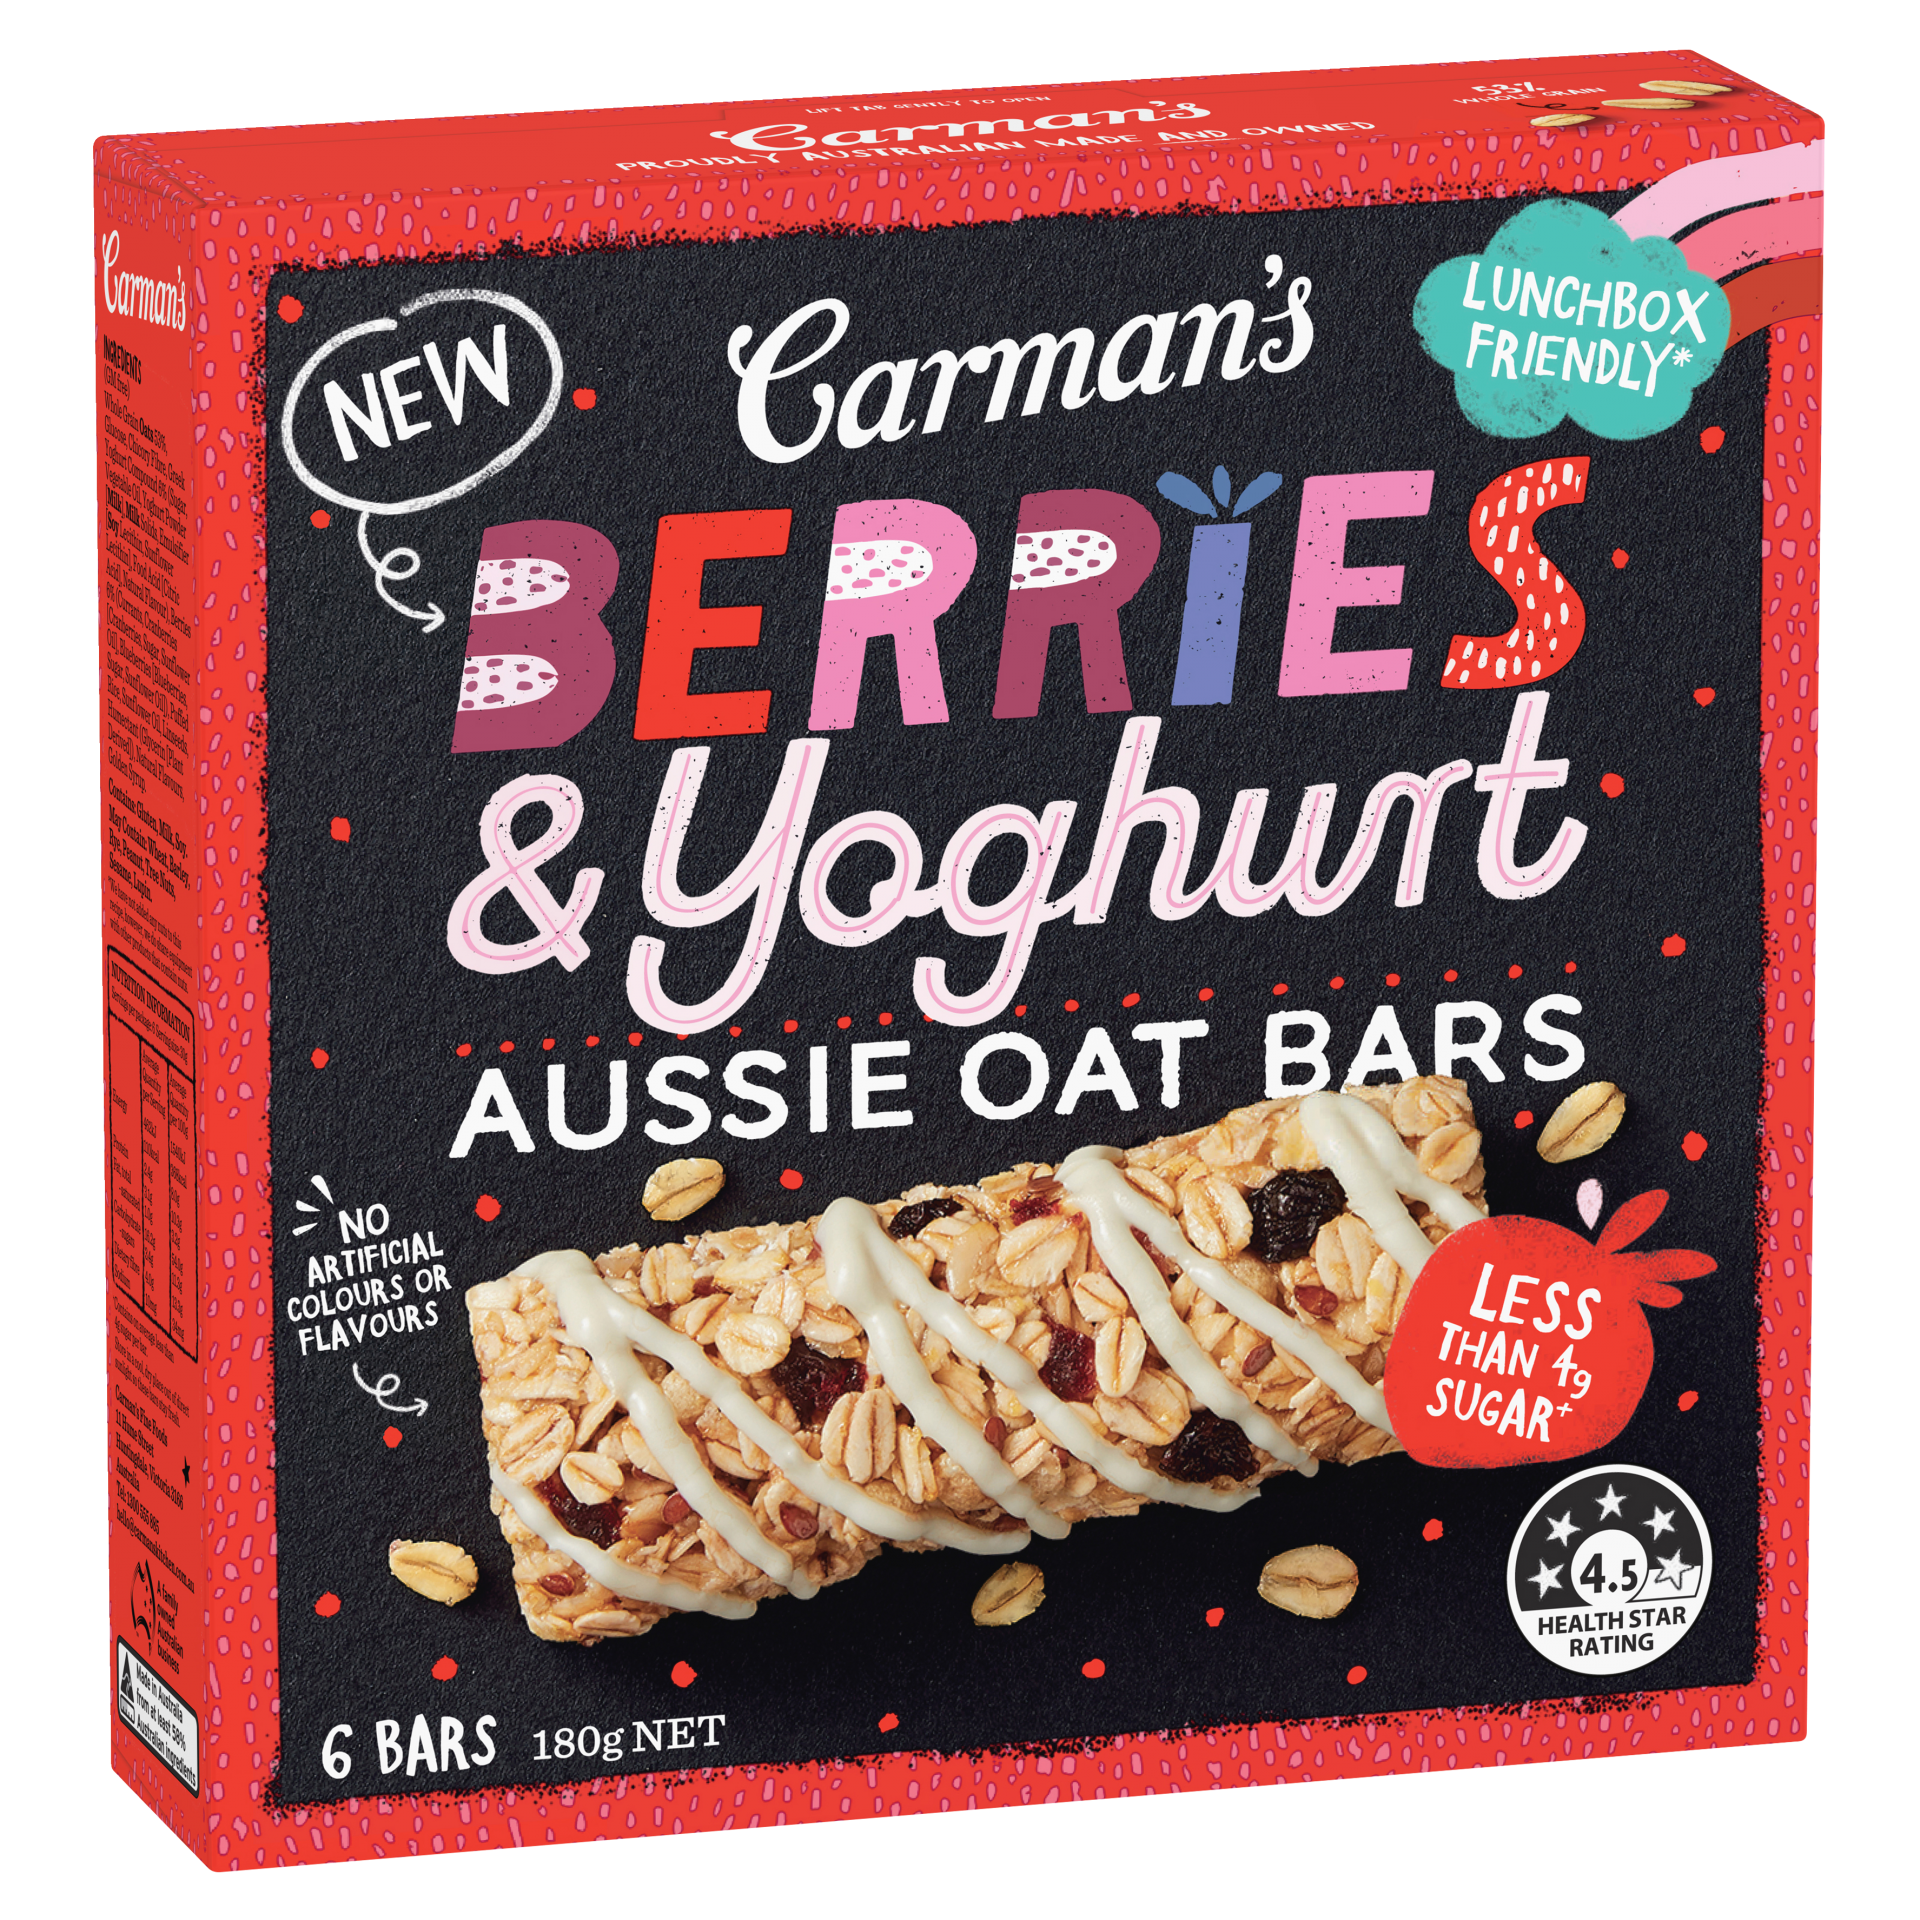 Berries & Yoghurt Aussie Oat Bars